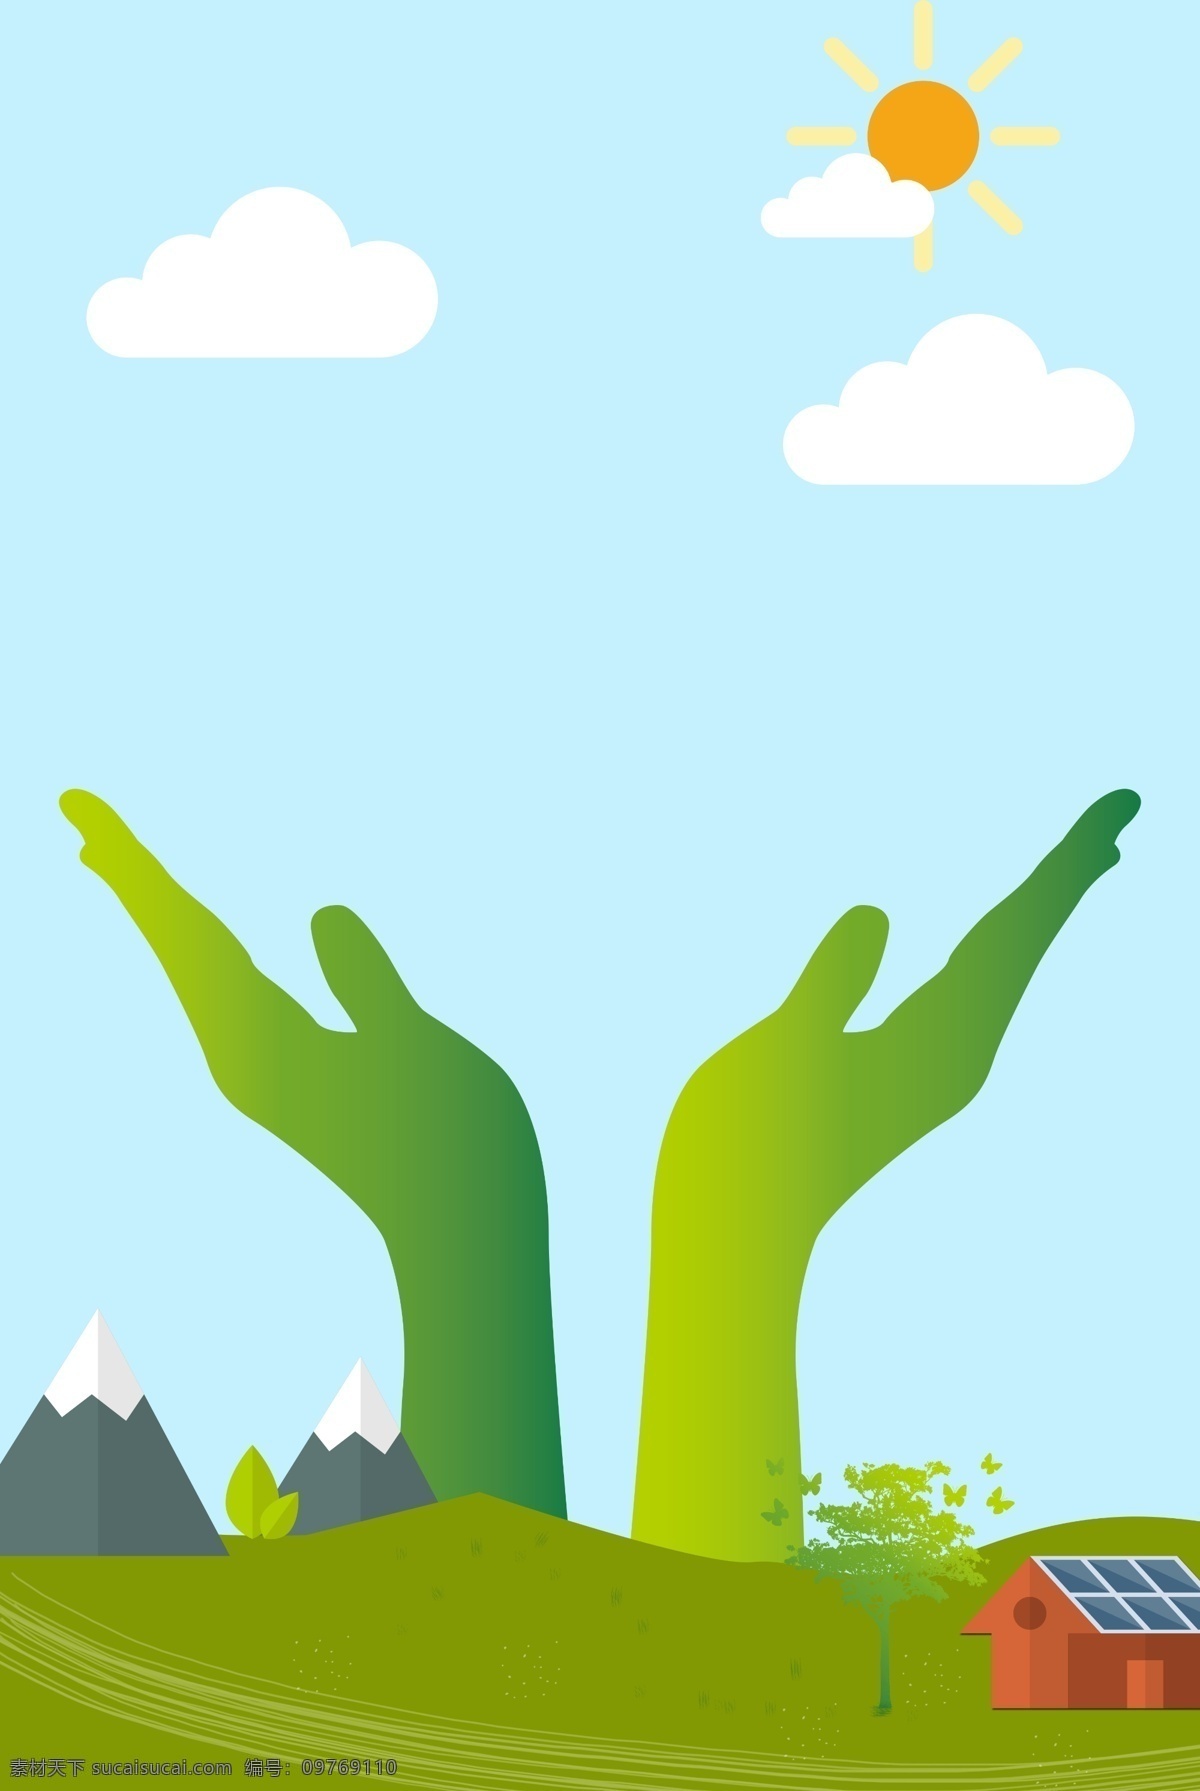 绿色环保背景 绿色环保 低碳生活 绿色 自然 环保 可循环 绿色能源 背景 矢量素材 环保背景 海报 宣传单 展架 卡片